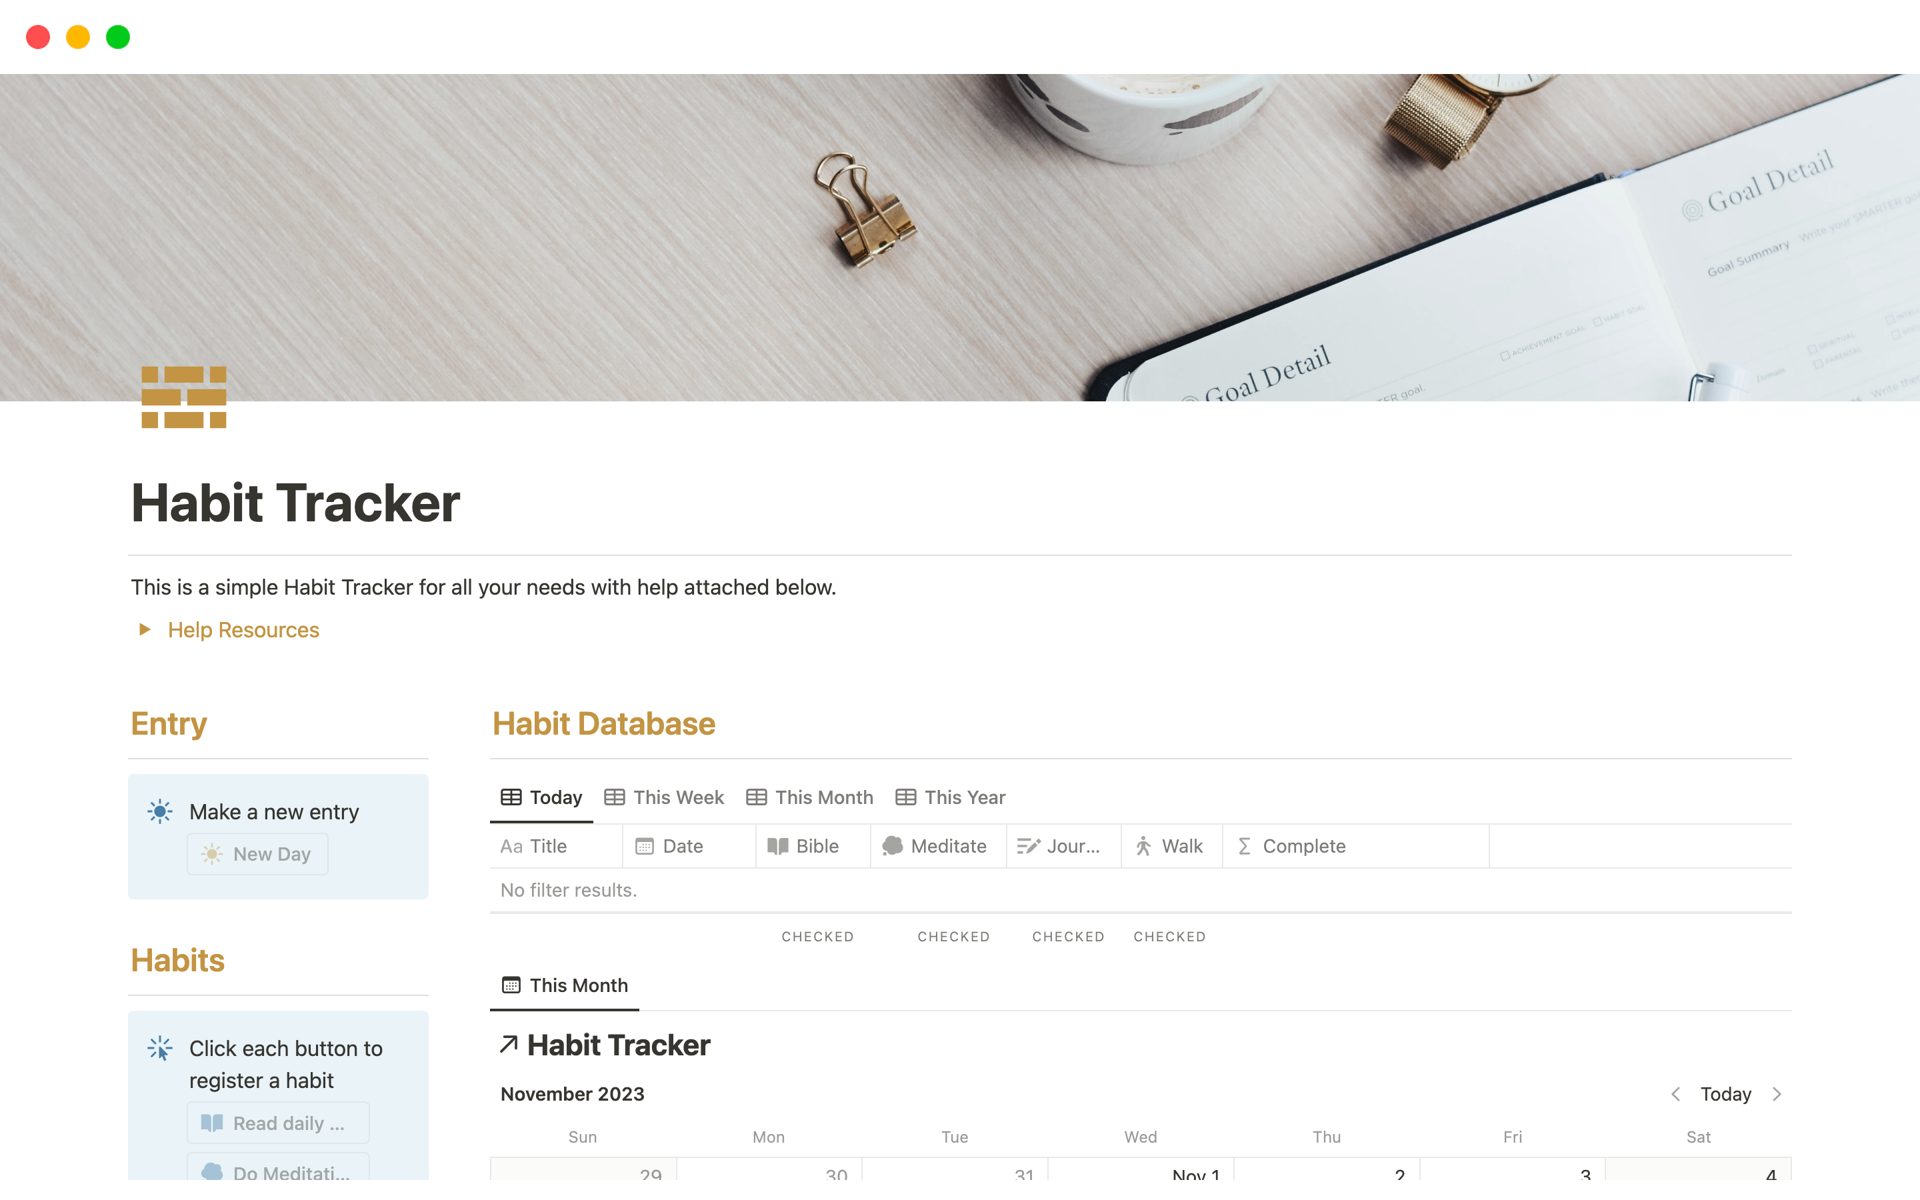 Vista previa de plantilla para Simple Habit Tracker